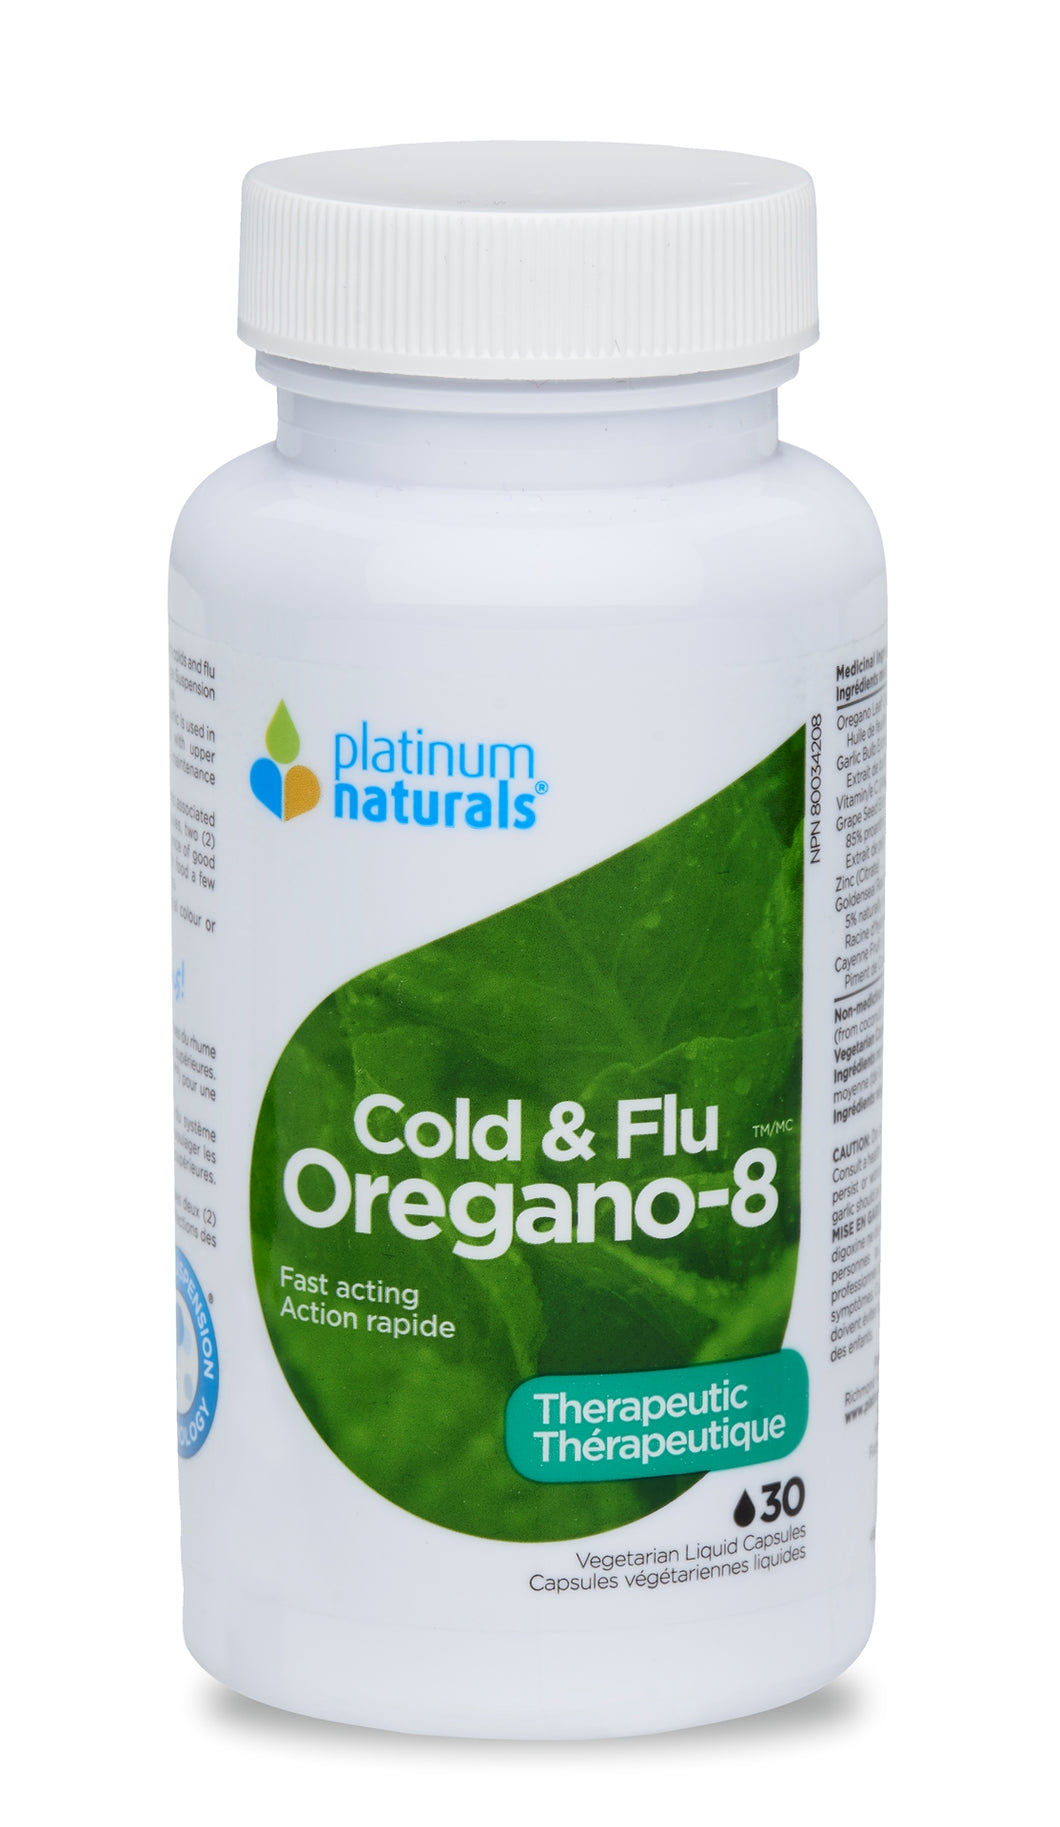 Platinum Naturals: Oregano-8™ Cold and Flu